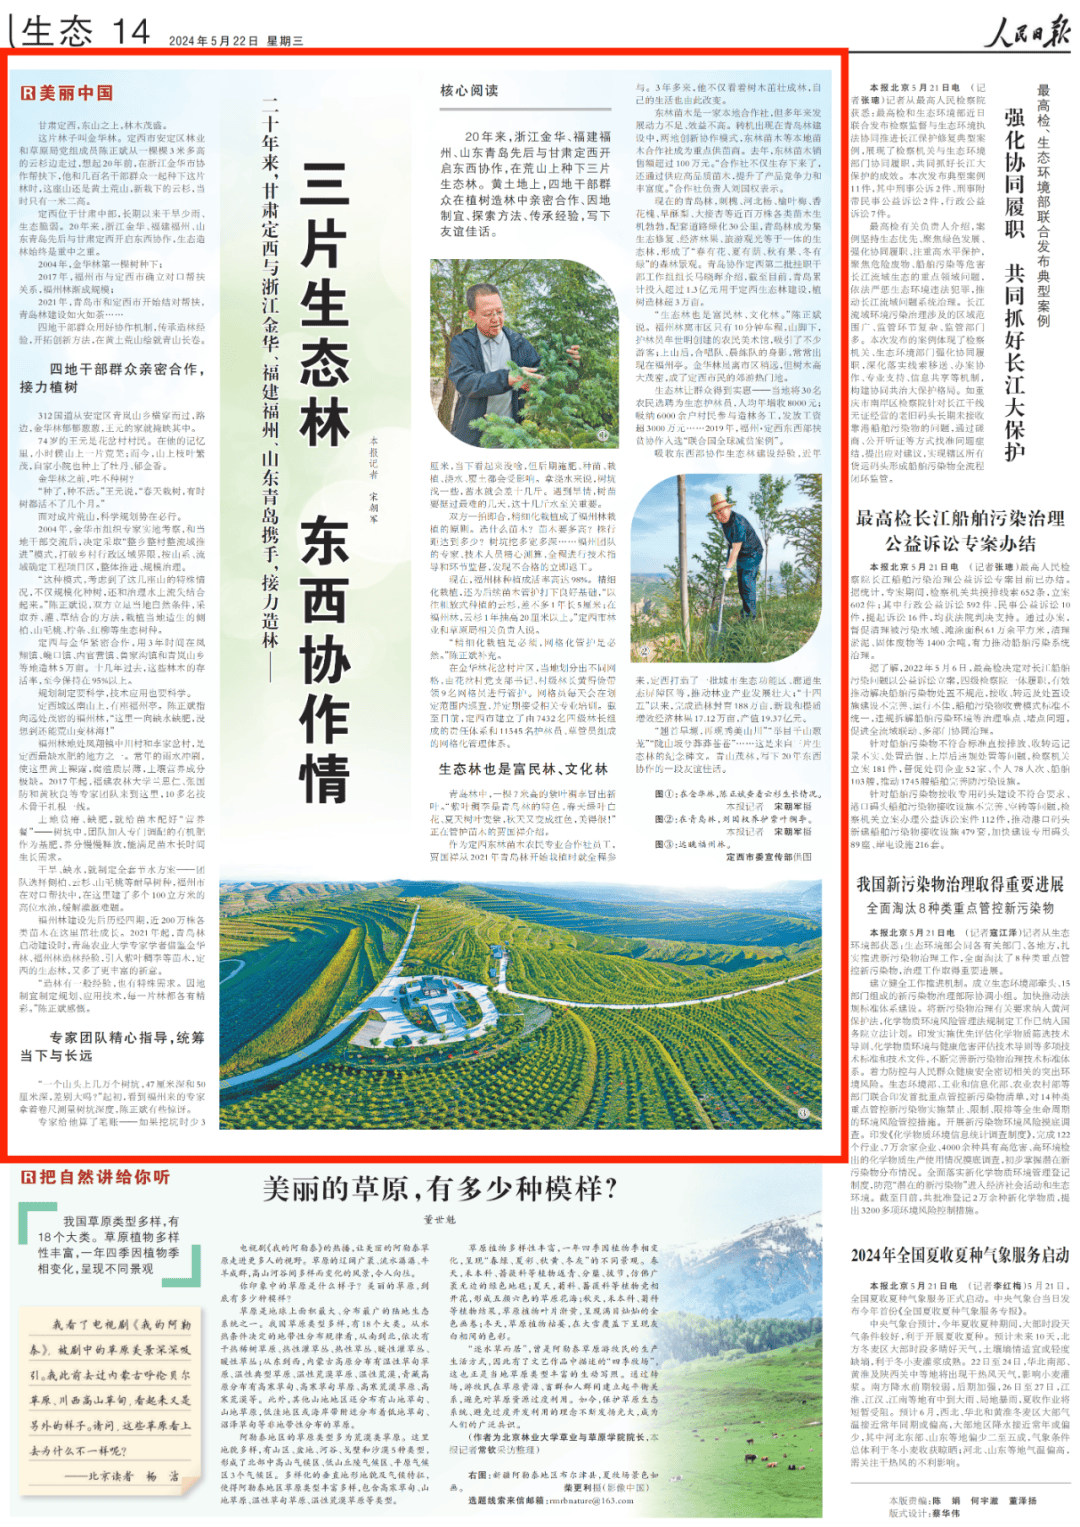 人民日报(第14版)头条报道安定区:三片生态林 东西协作情(美丽中国)